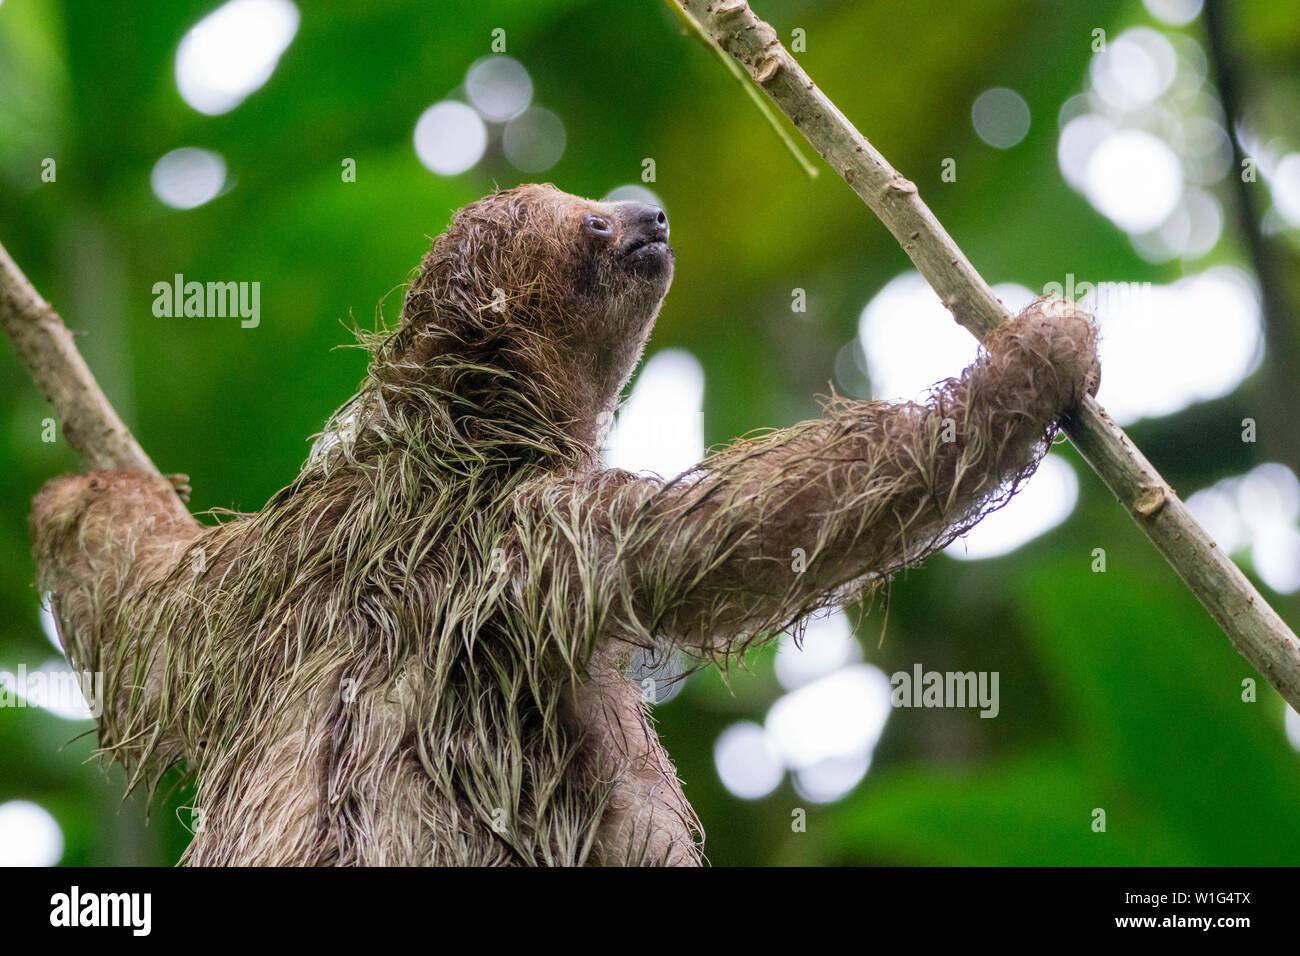 Trois bébés-toed sloth (Bradypus variegatus) escalade un arbre dans la forêt éternelle des enfants au Costa Rica Banque D'Images